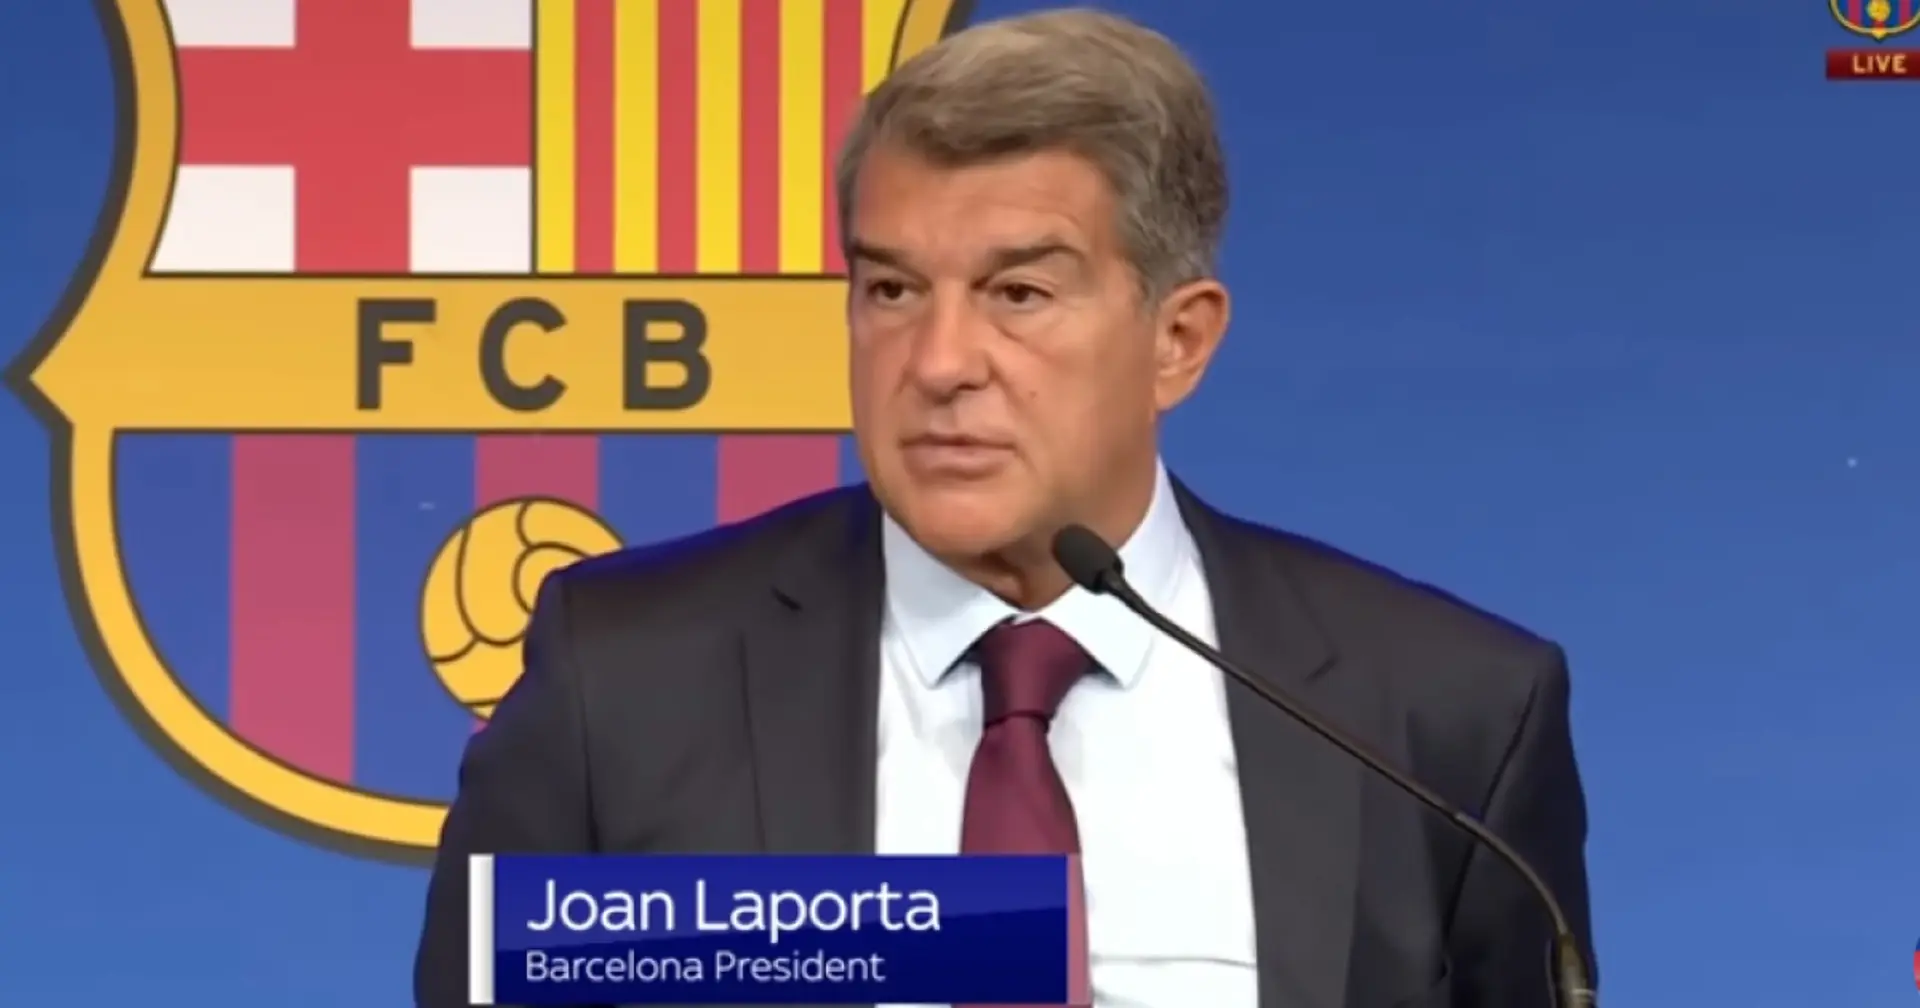 Joan Laporta hace una gran predicción sobre el Barcelona que sucederá 'antes de lo esperado'